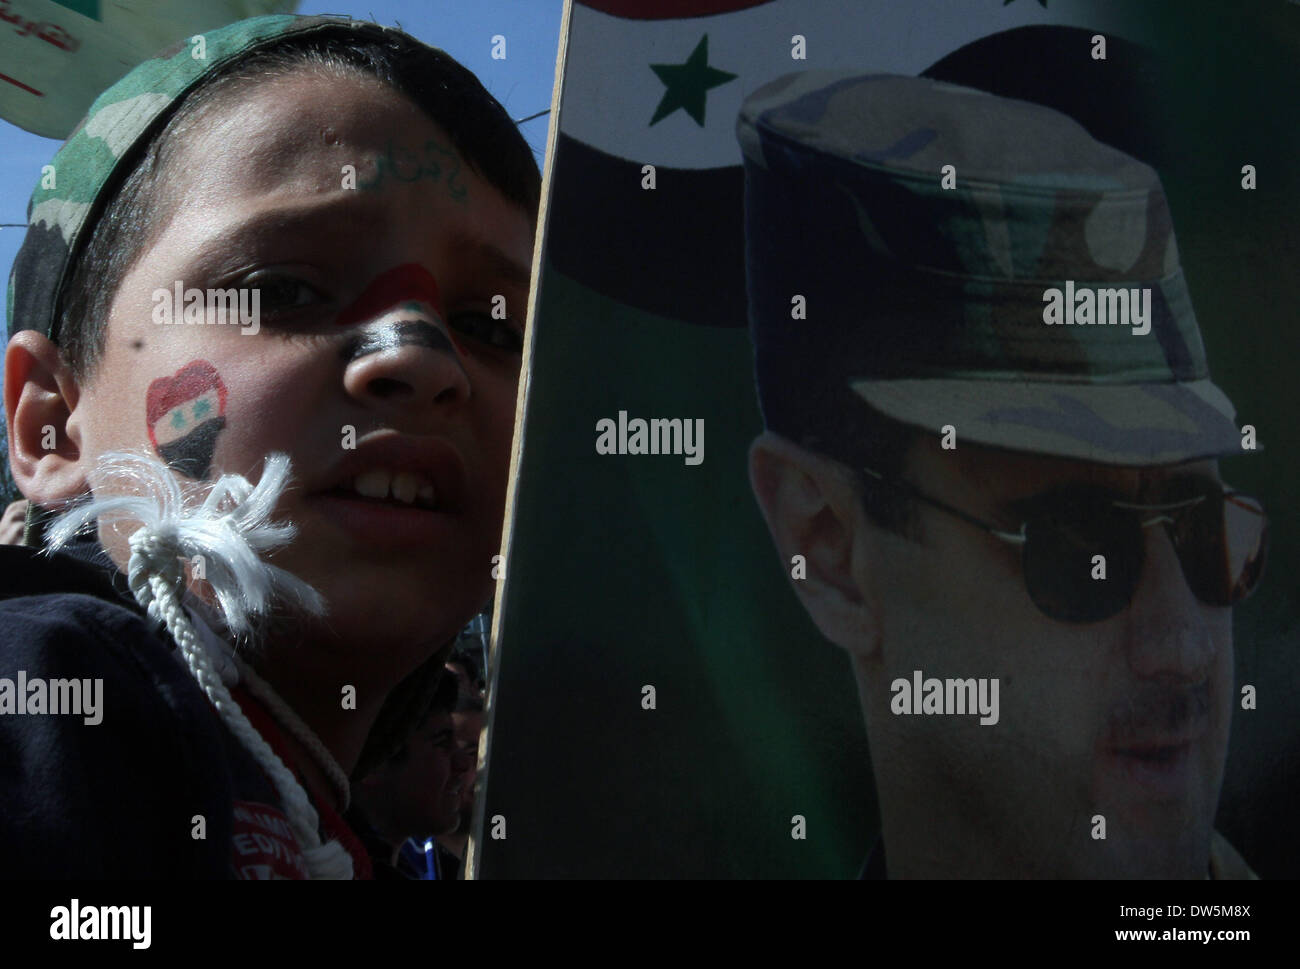 Damasco, Siria. 28 feb 2014. Un ragazzo detiene un ritratto del Presidente siriano Bashar al-Assad durante un rally in Damasco, Siria, il 28 febbraio, 2014. Credito: Bassem Tellawi/Xinhua/Alamy Live News Foto Stock